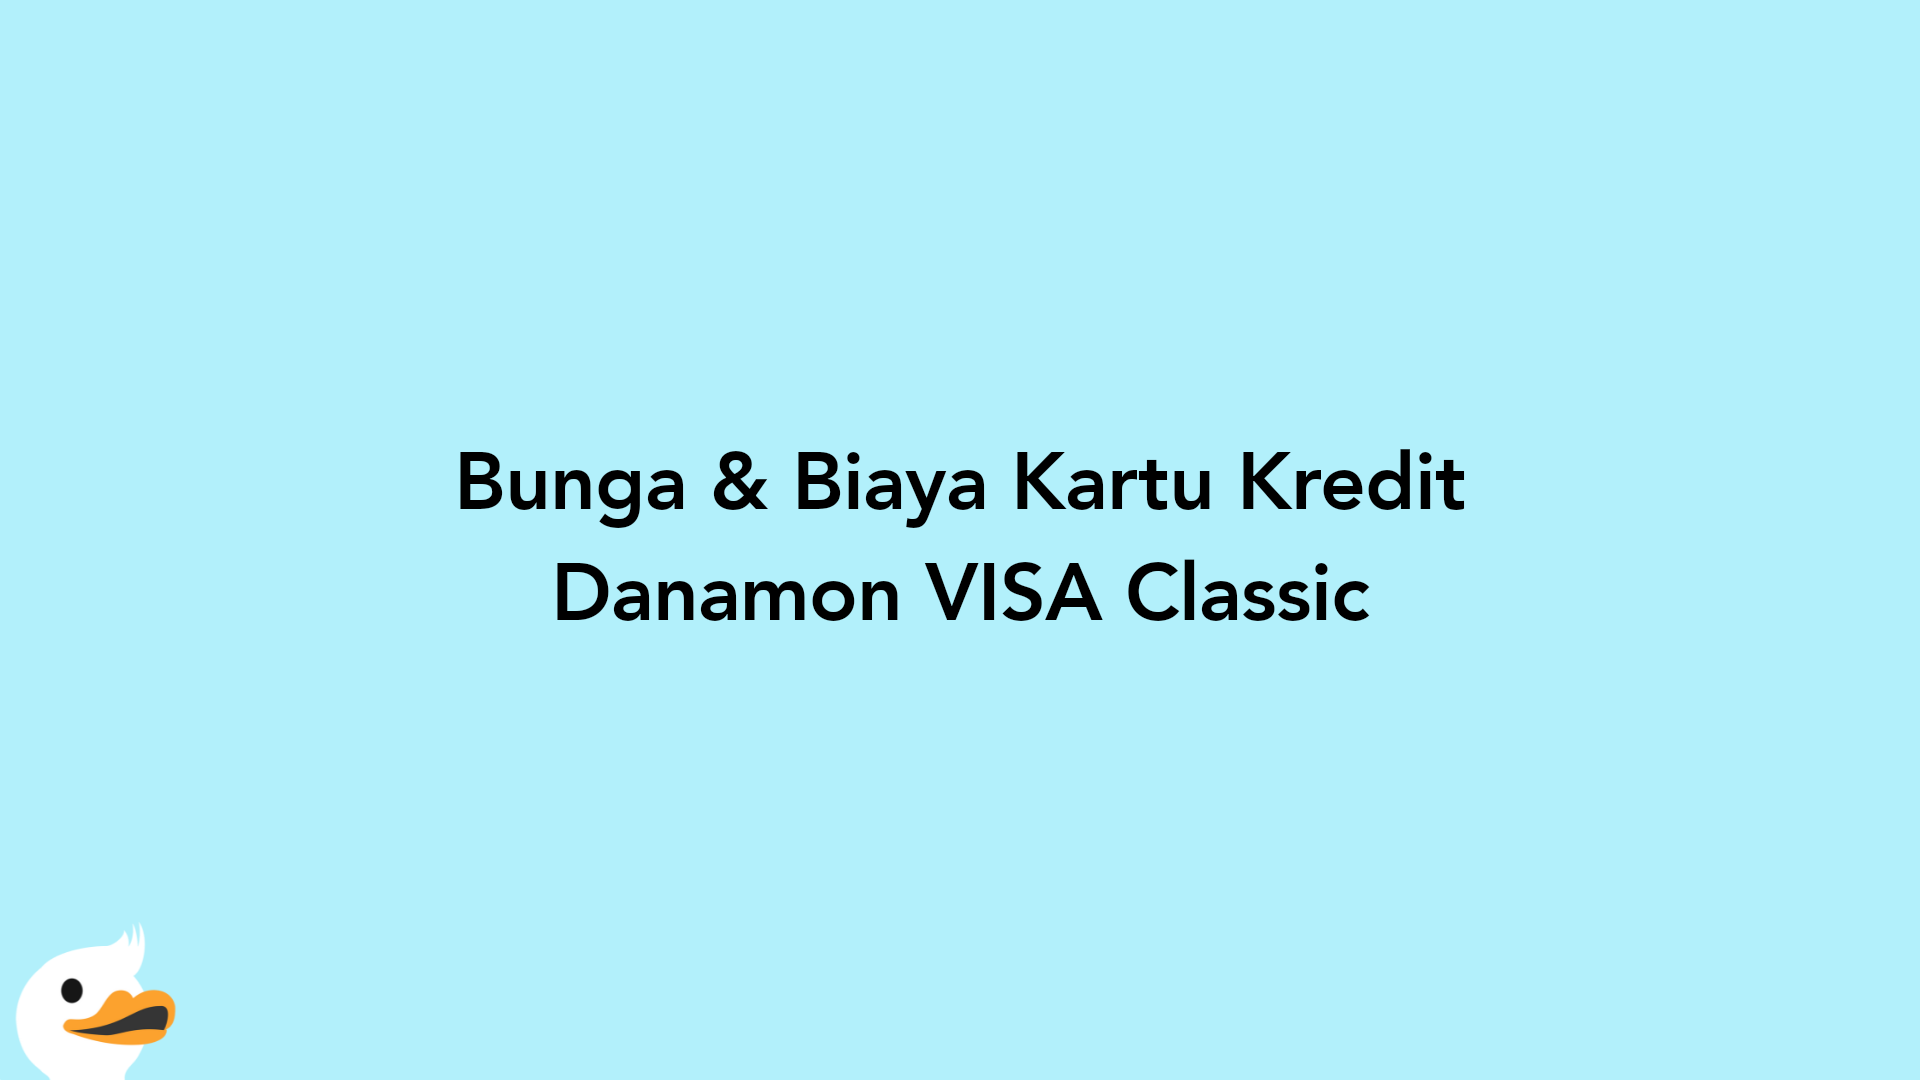 Bunga & Biaya Kartu Kredit Danamon VISA Classic